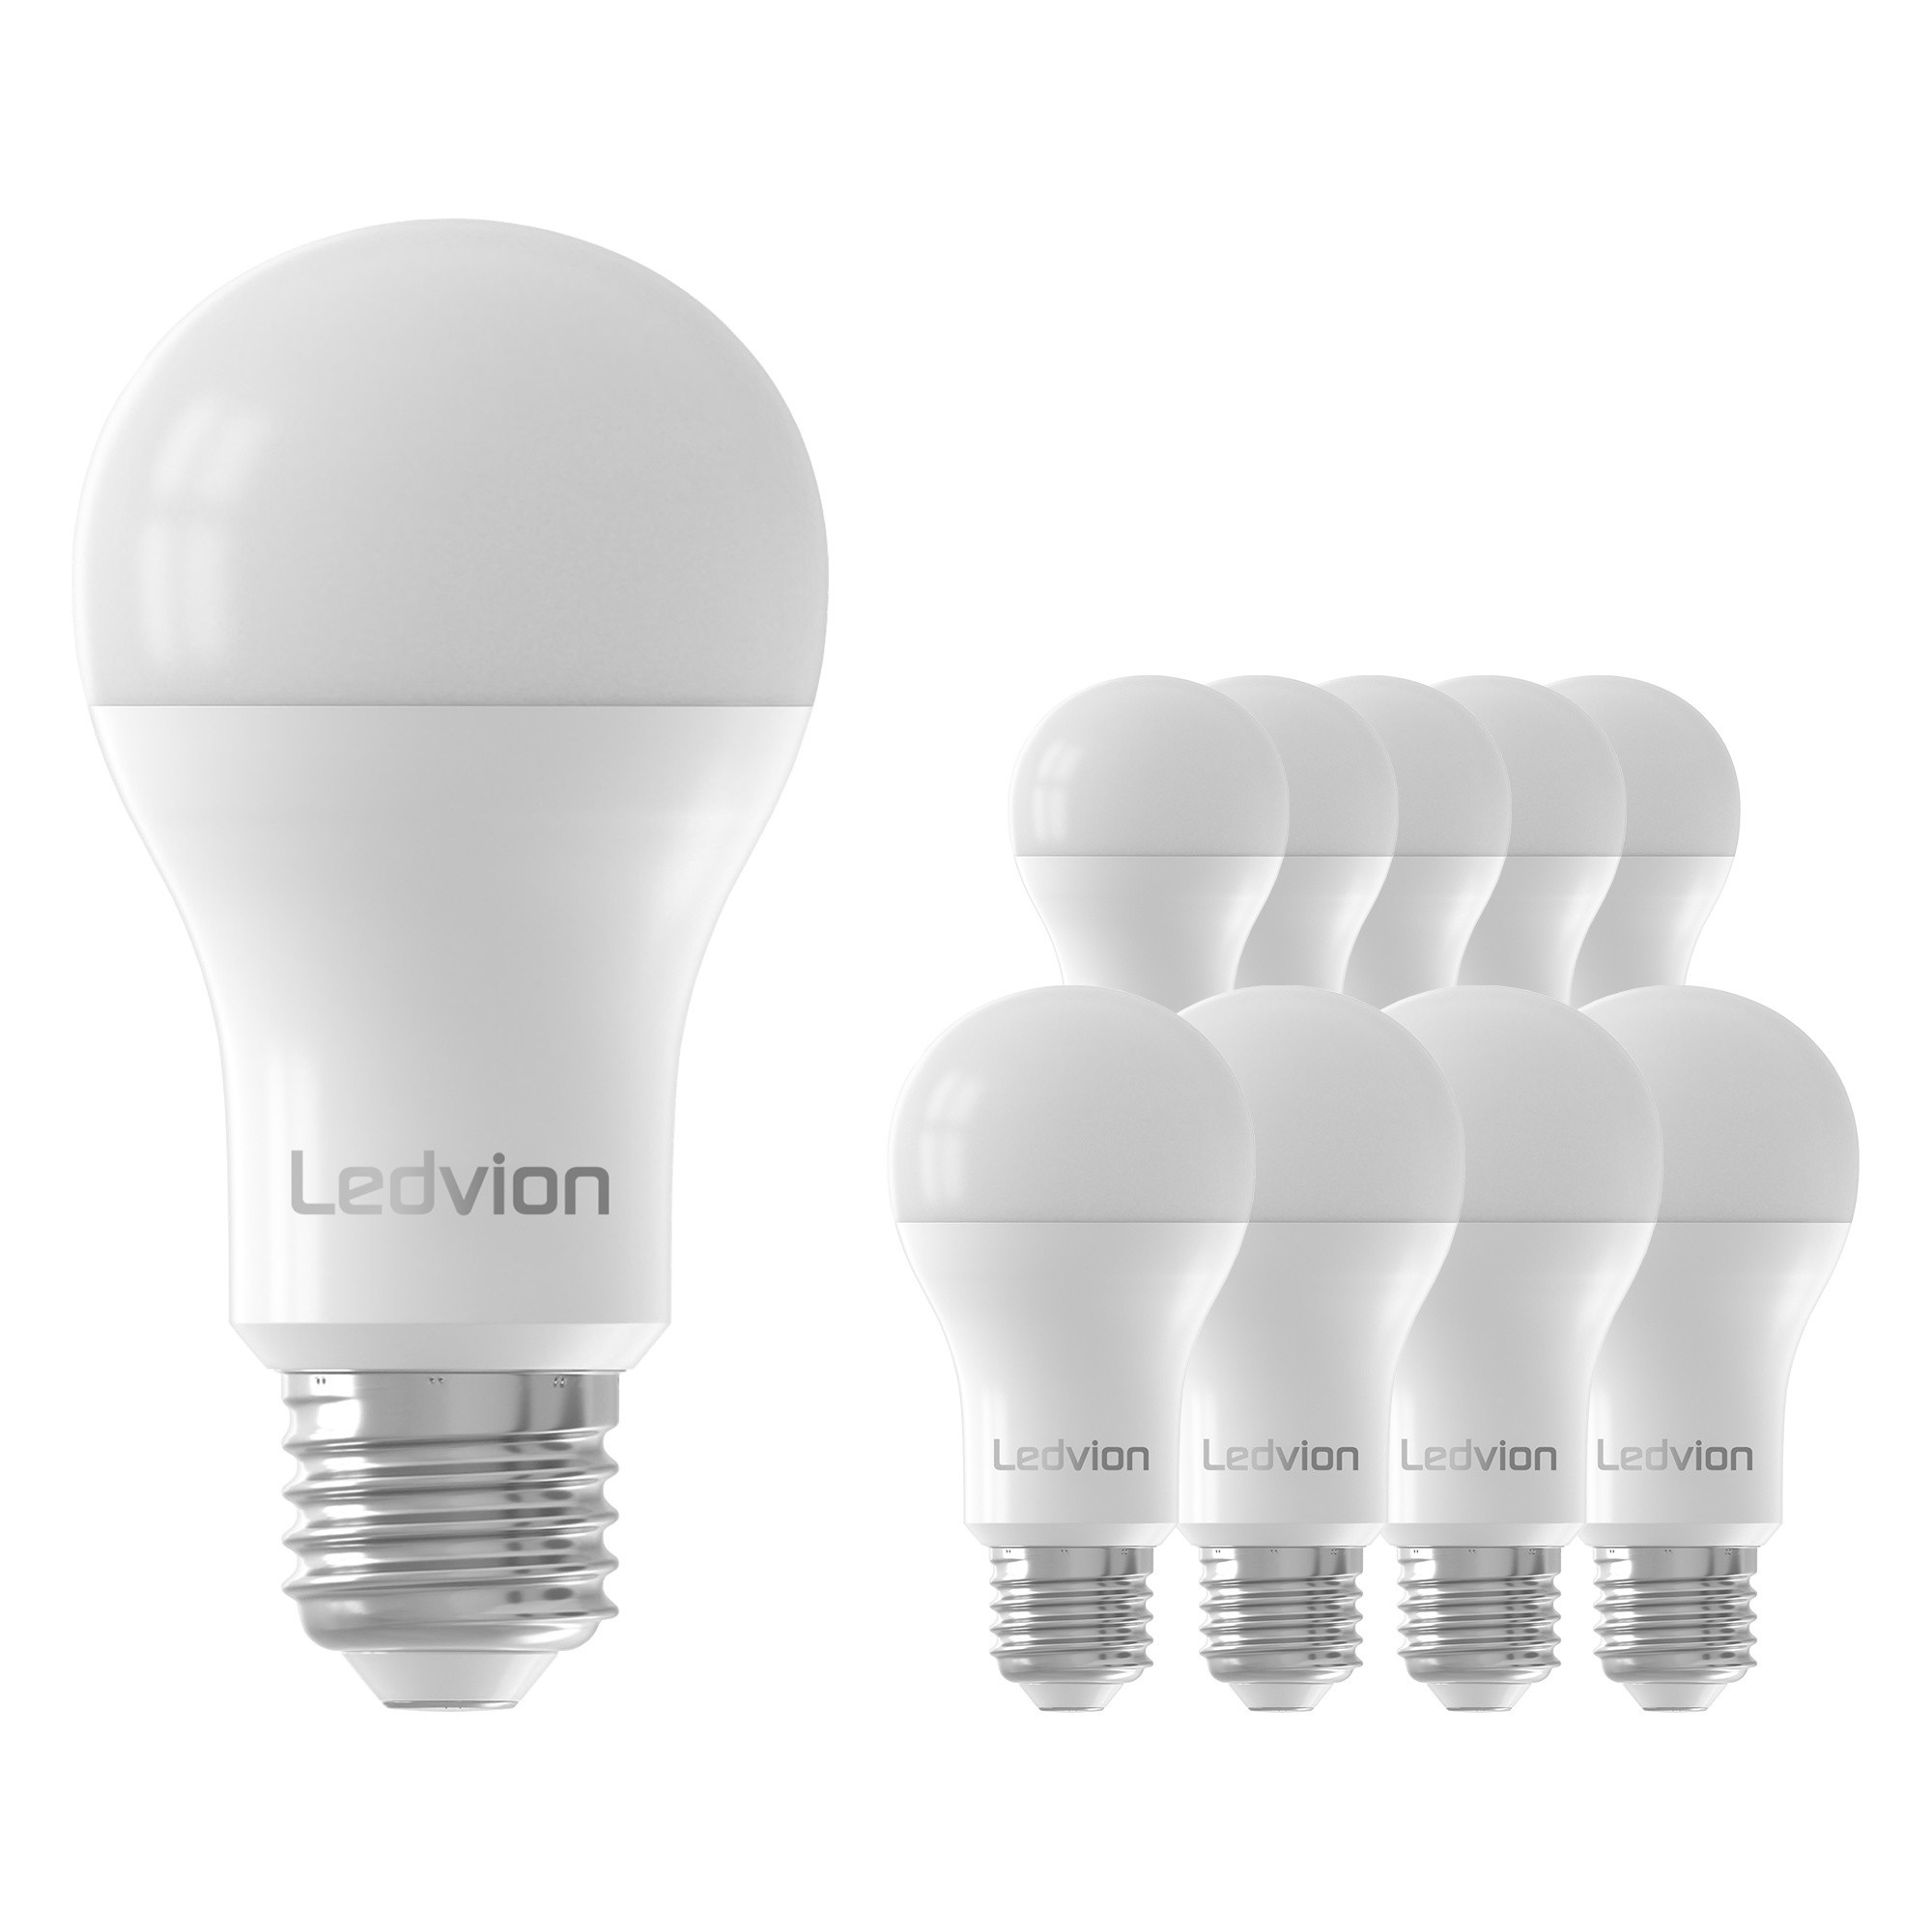 Leerling Zakje moeilijk tevreden te krijgen Ledvion Dimbare E27 LED Lamp - 8.8W - 4000K - 806 Lumen - Lightexpert.nl